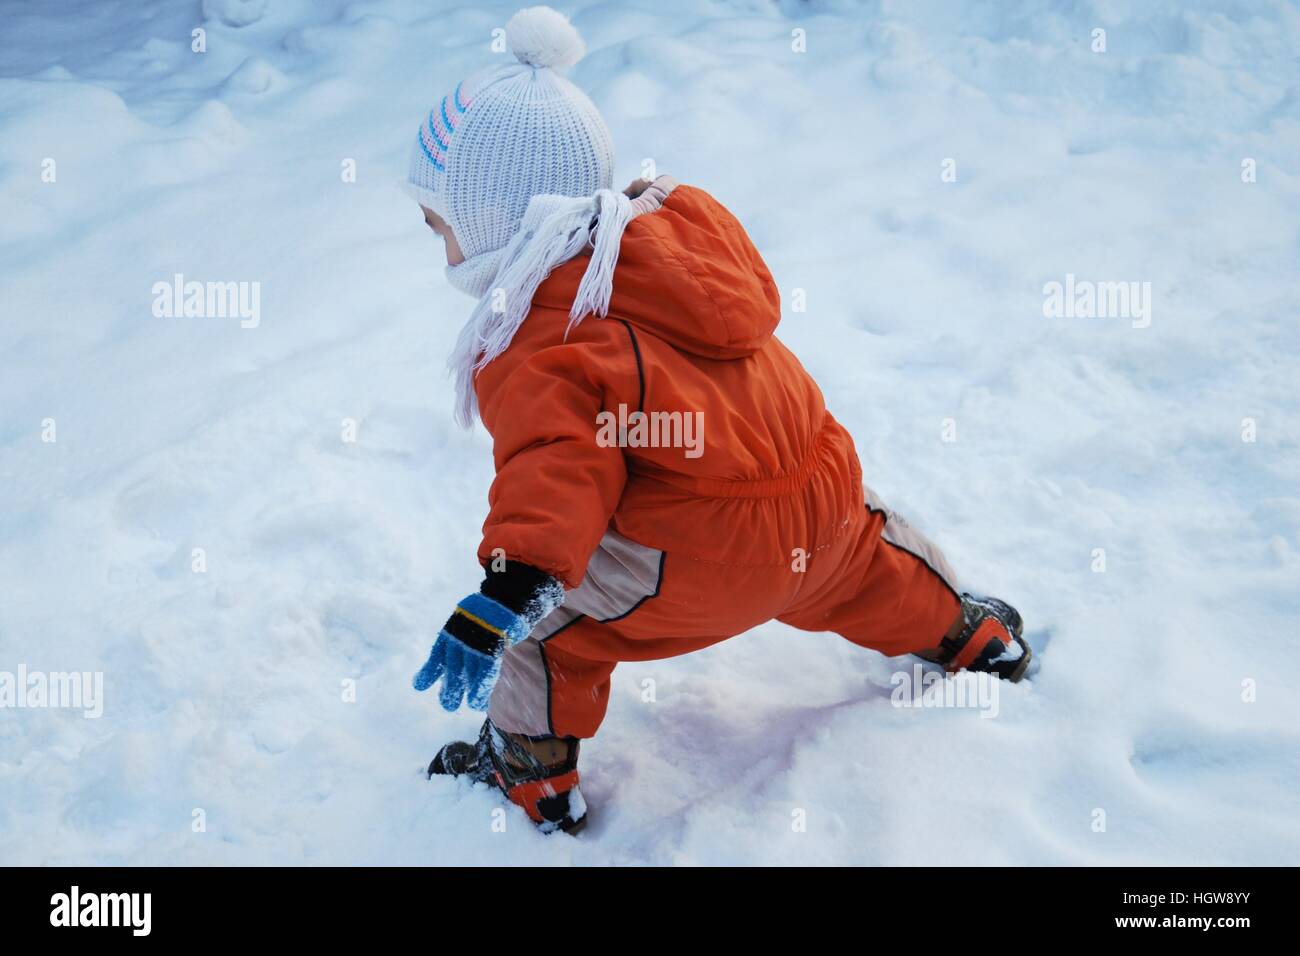 Little Boy giocare nella neve Foto Stock